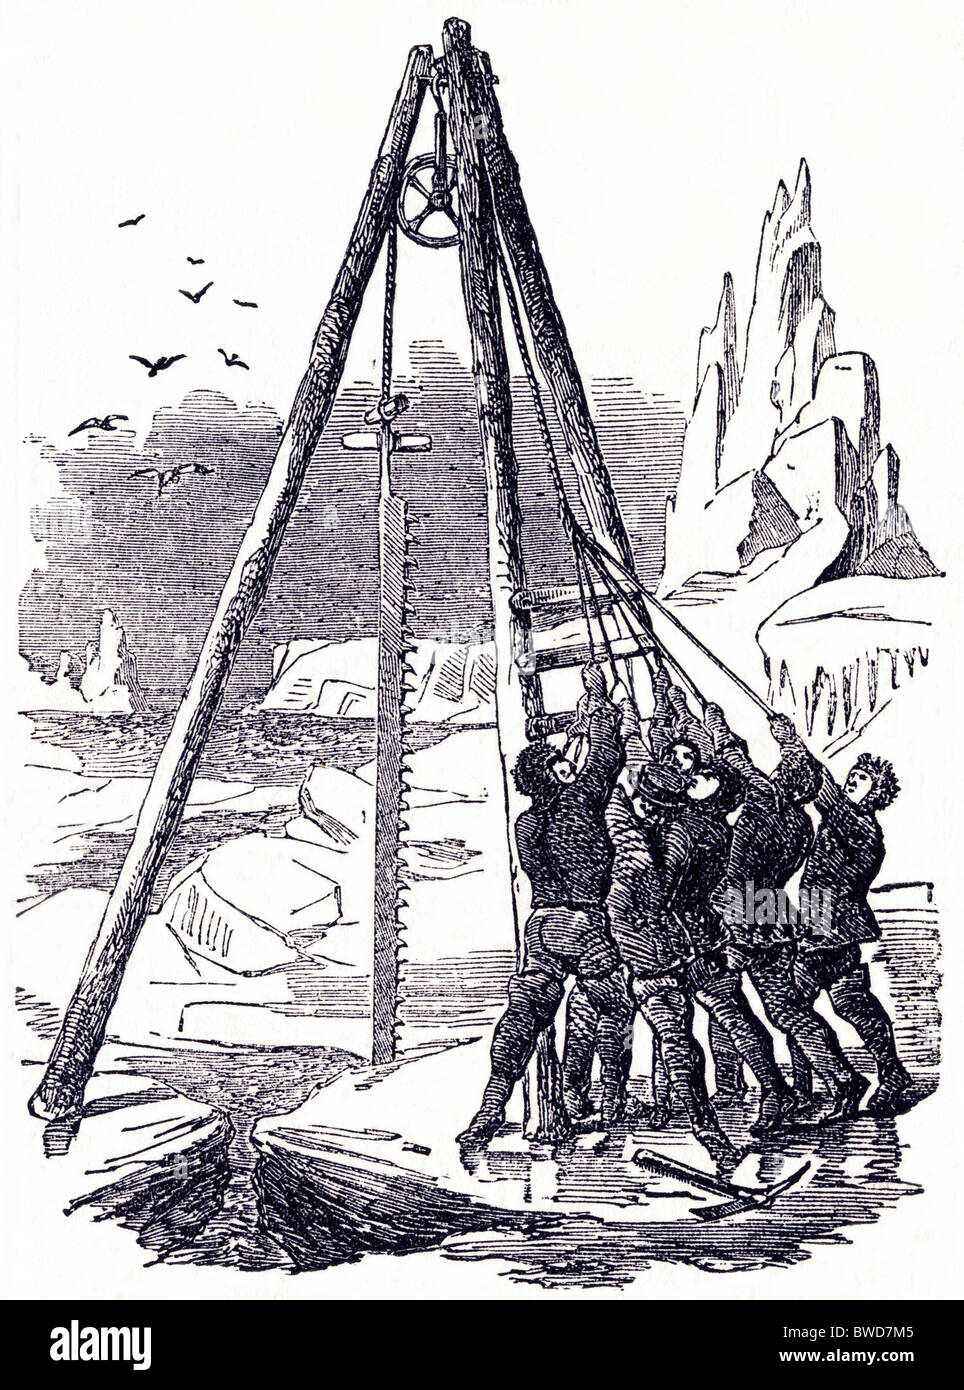 La gravure de l'époque victorienne de marins sur la 'North Star' à l'aide vu la glace à la recherche de l'expédition arctique perdu de Sir John Franklin, daté de mai 1849 Banque D'Images